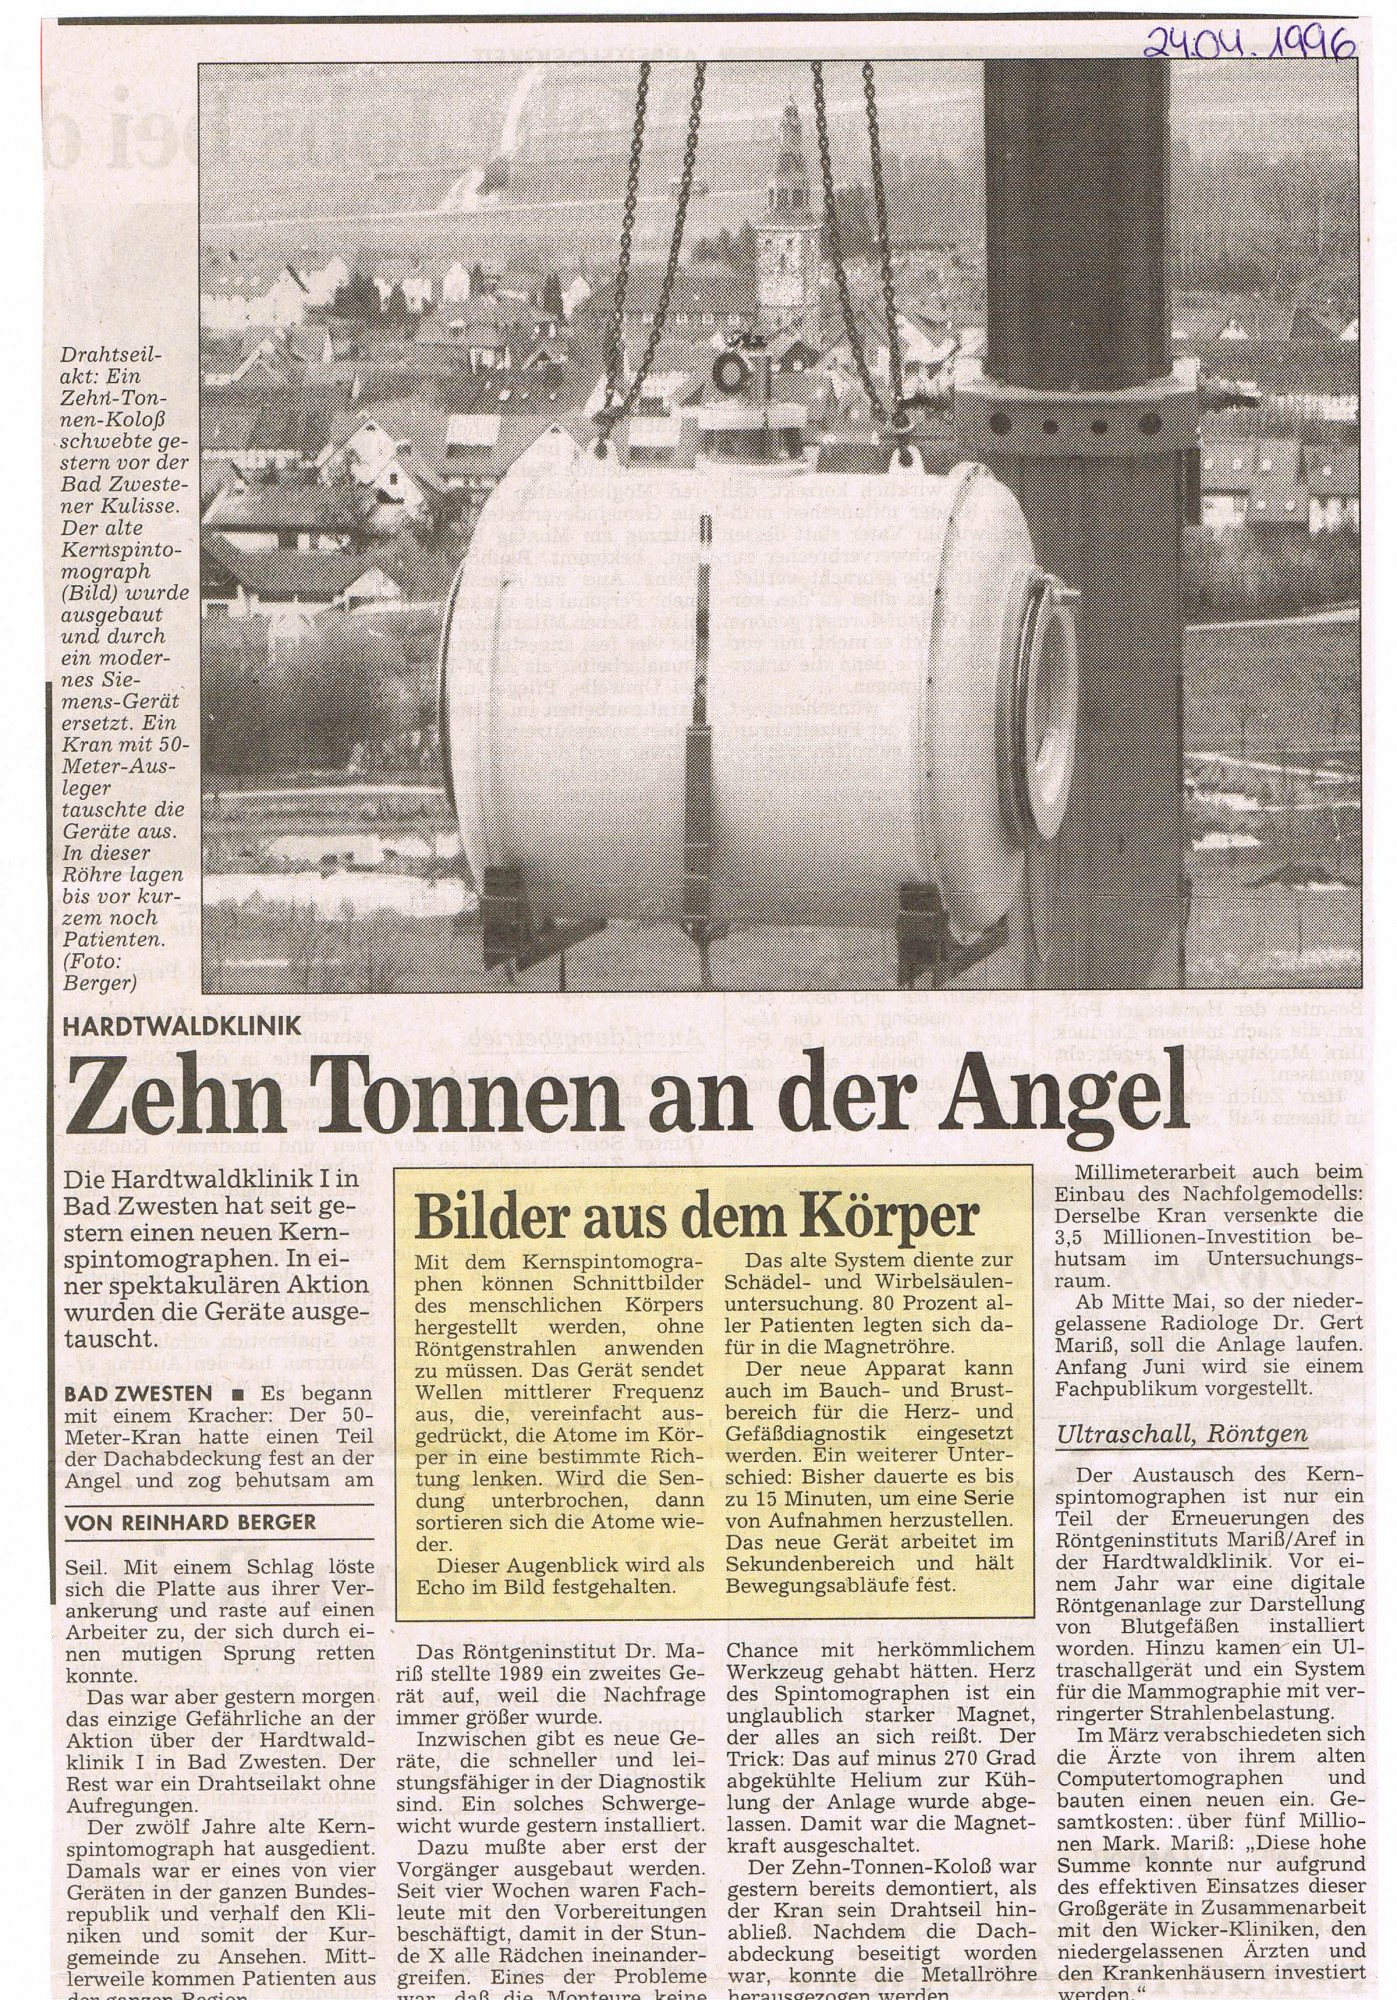 1996-04-24 Zehn Tonnen an der Angel-001